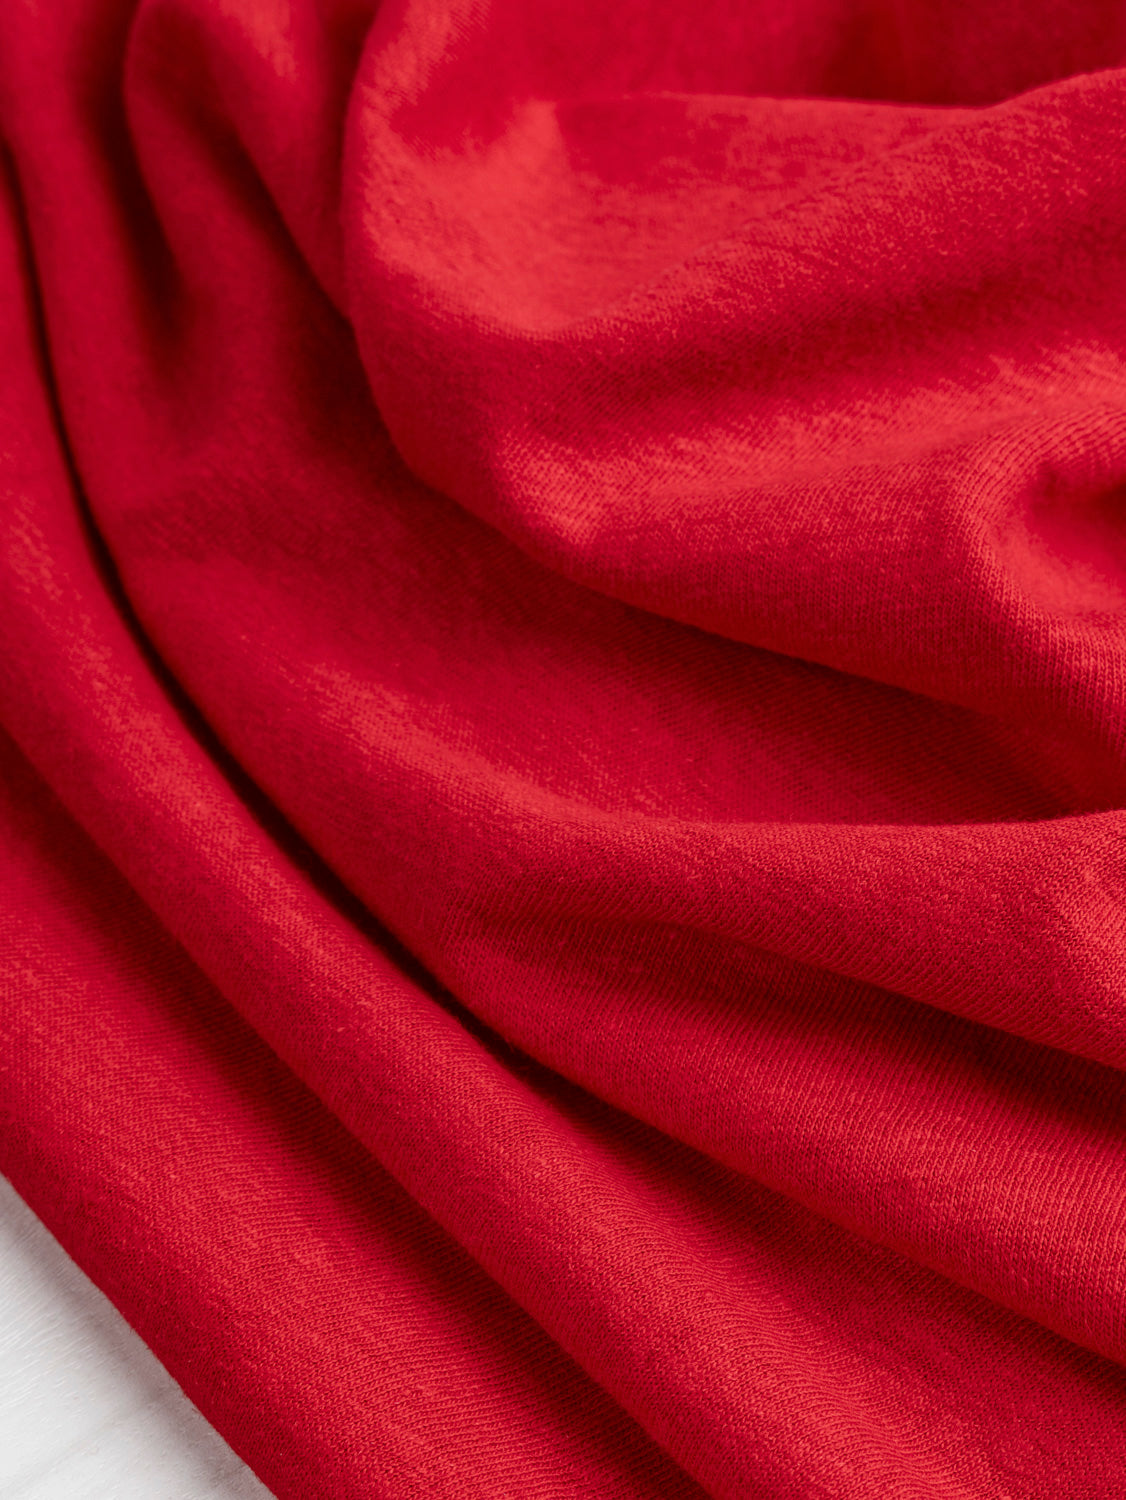 Hemp Organic Cotton Jersey Knit - Red | Core Fabrics